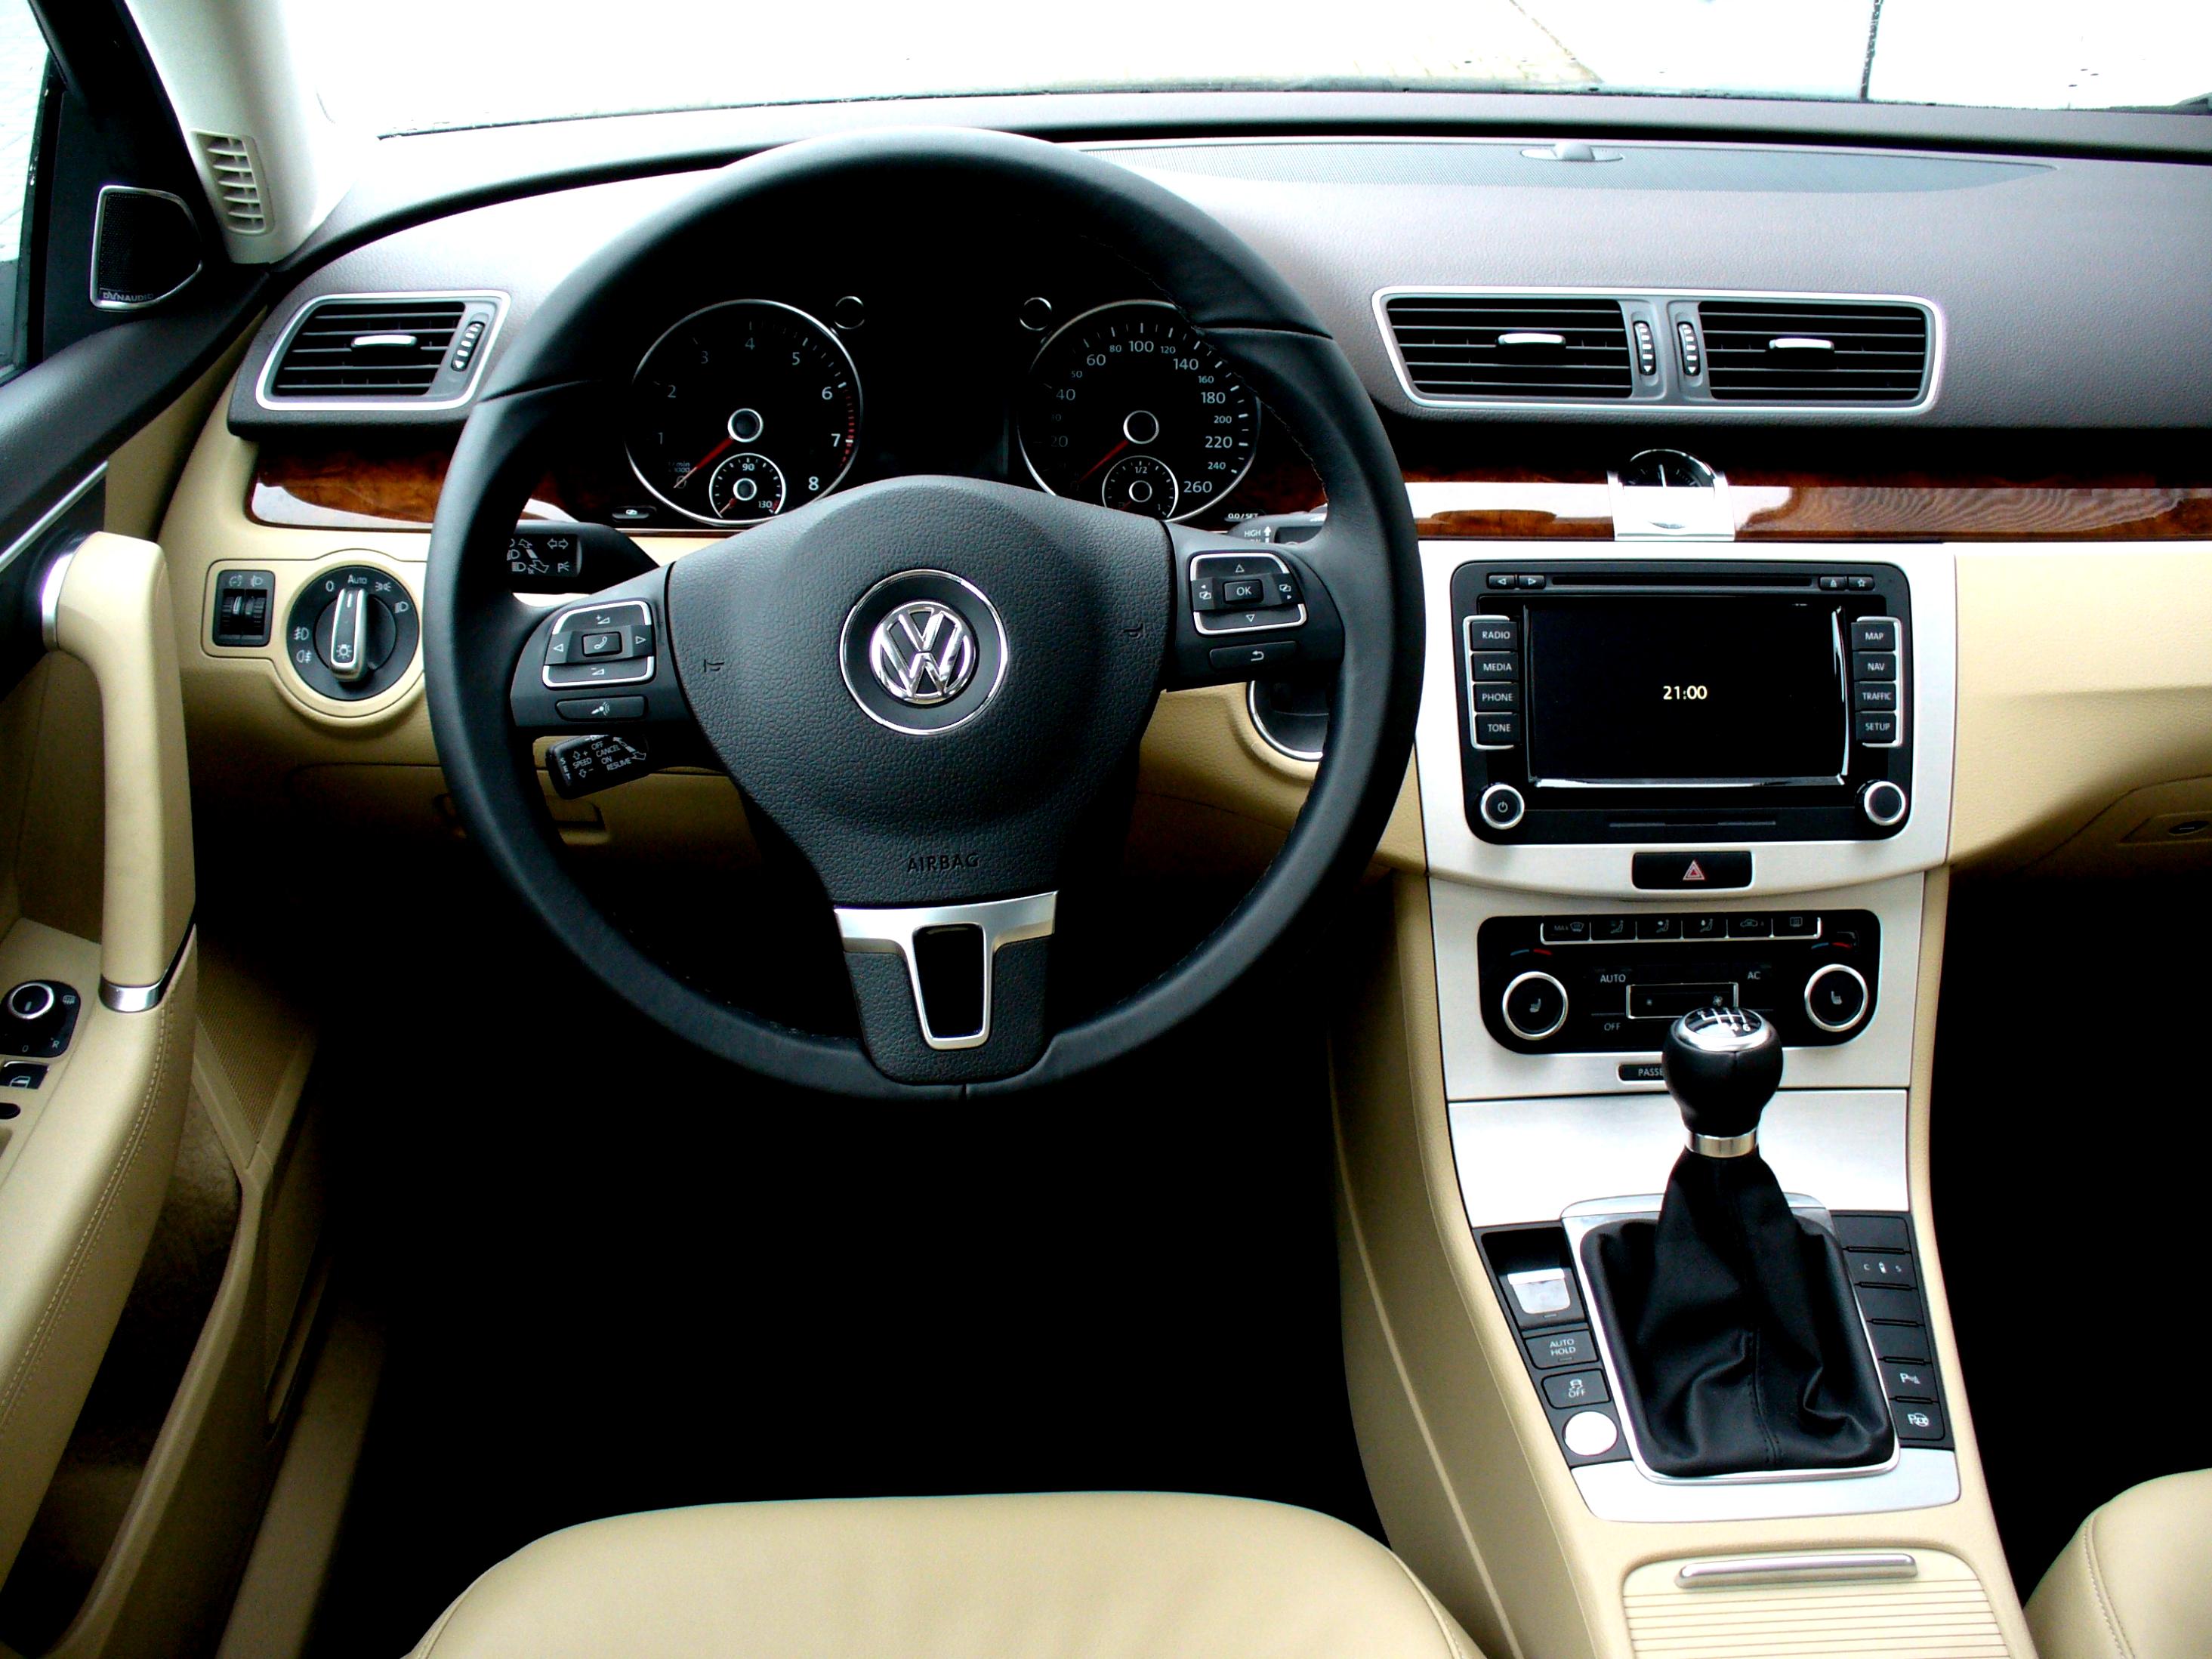 Купить пассат б6 1.8. Фольксваген Пассат б7 1.8. VW Passat b7 Interior. Volkswagen Passat b7 салон. Passat b7 Comfortline.